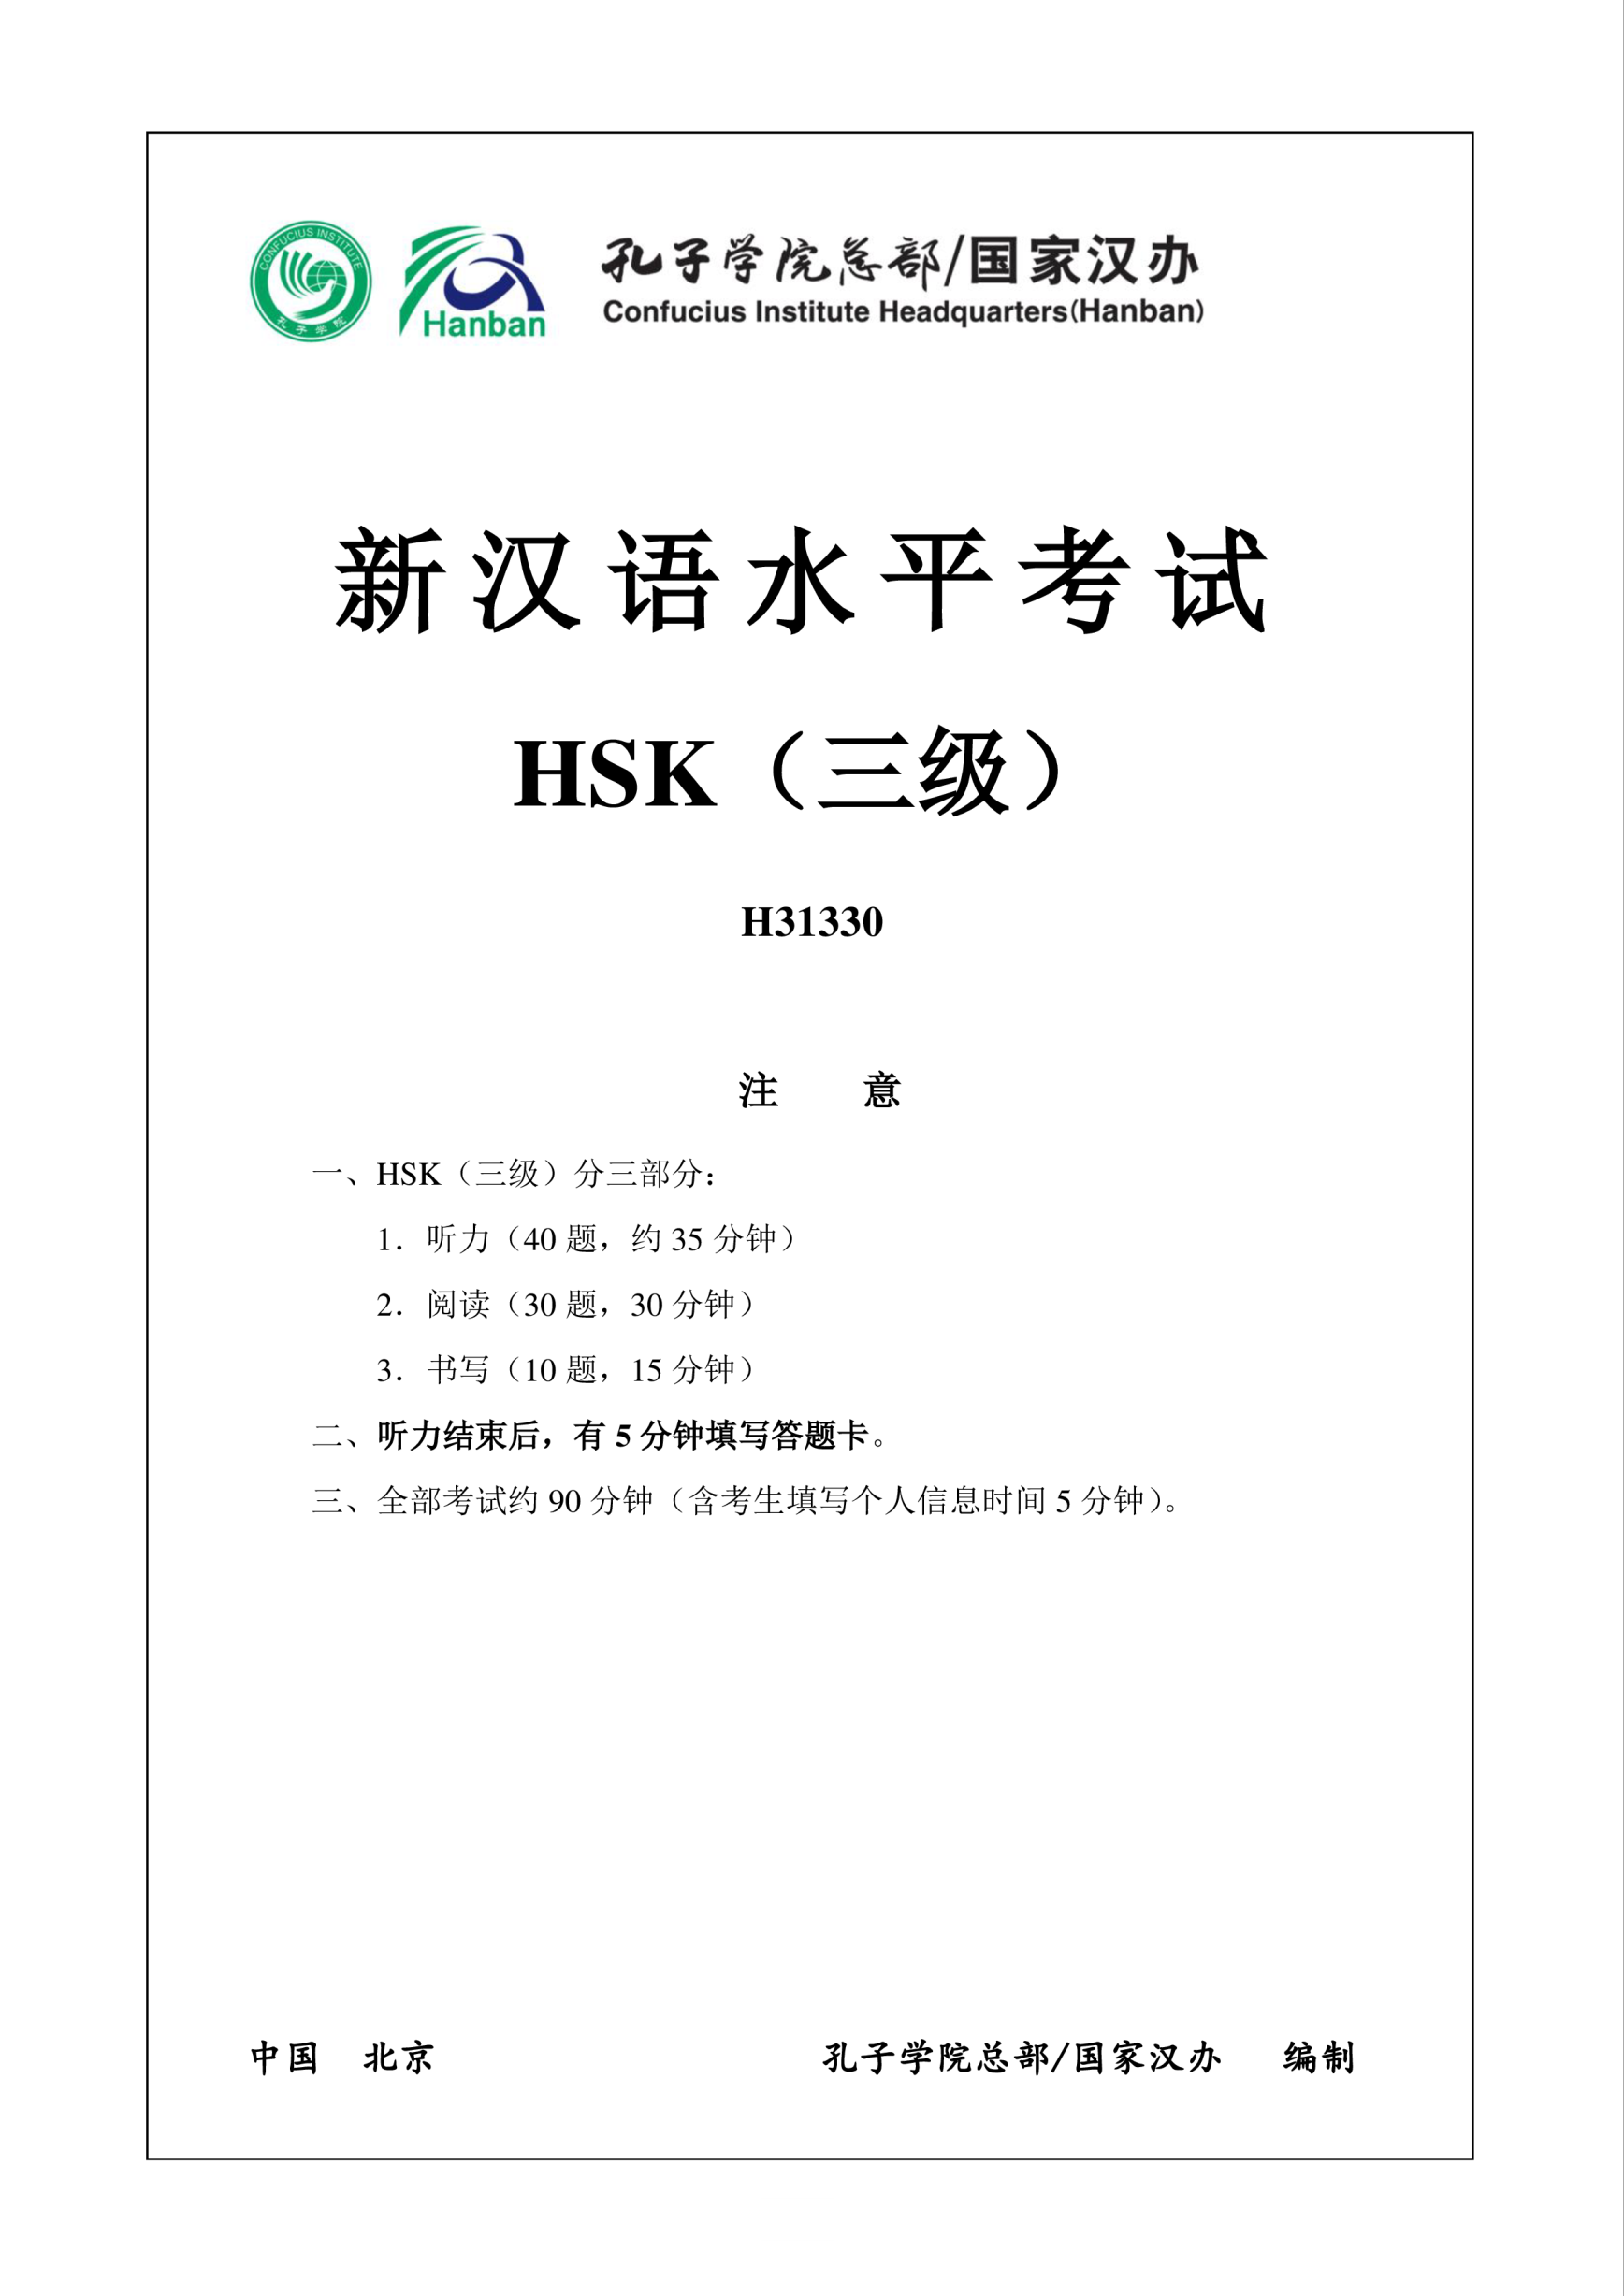 Vorschaubild der VorlageHSK3 Chinese Exam including Answers # HSK3 H31330